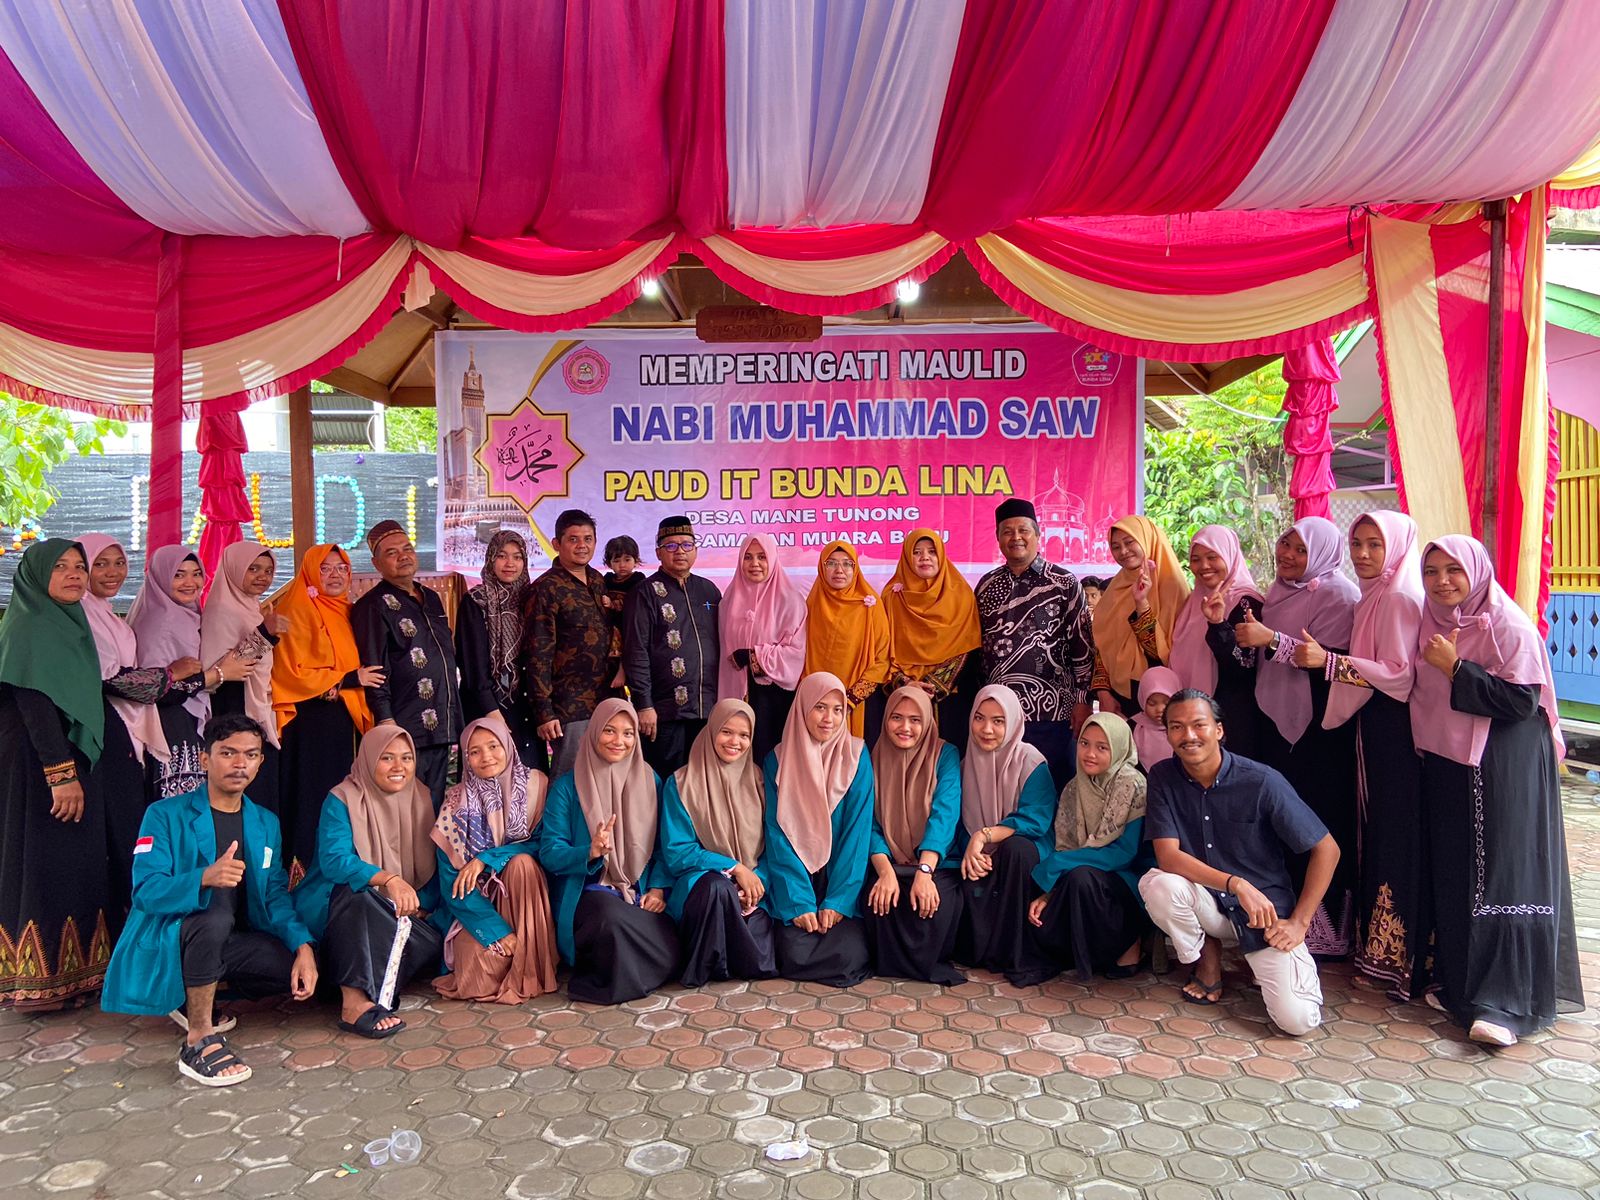 Perkenalkan Tradisi Aceh, PAUD IT Bunda Lina Sukses Gelar Perayaan Maulid Nabi Muhammad Saw 1444 H